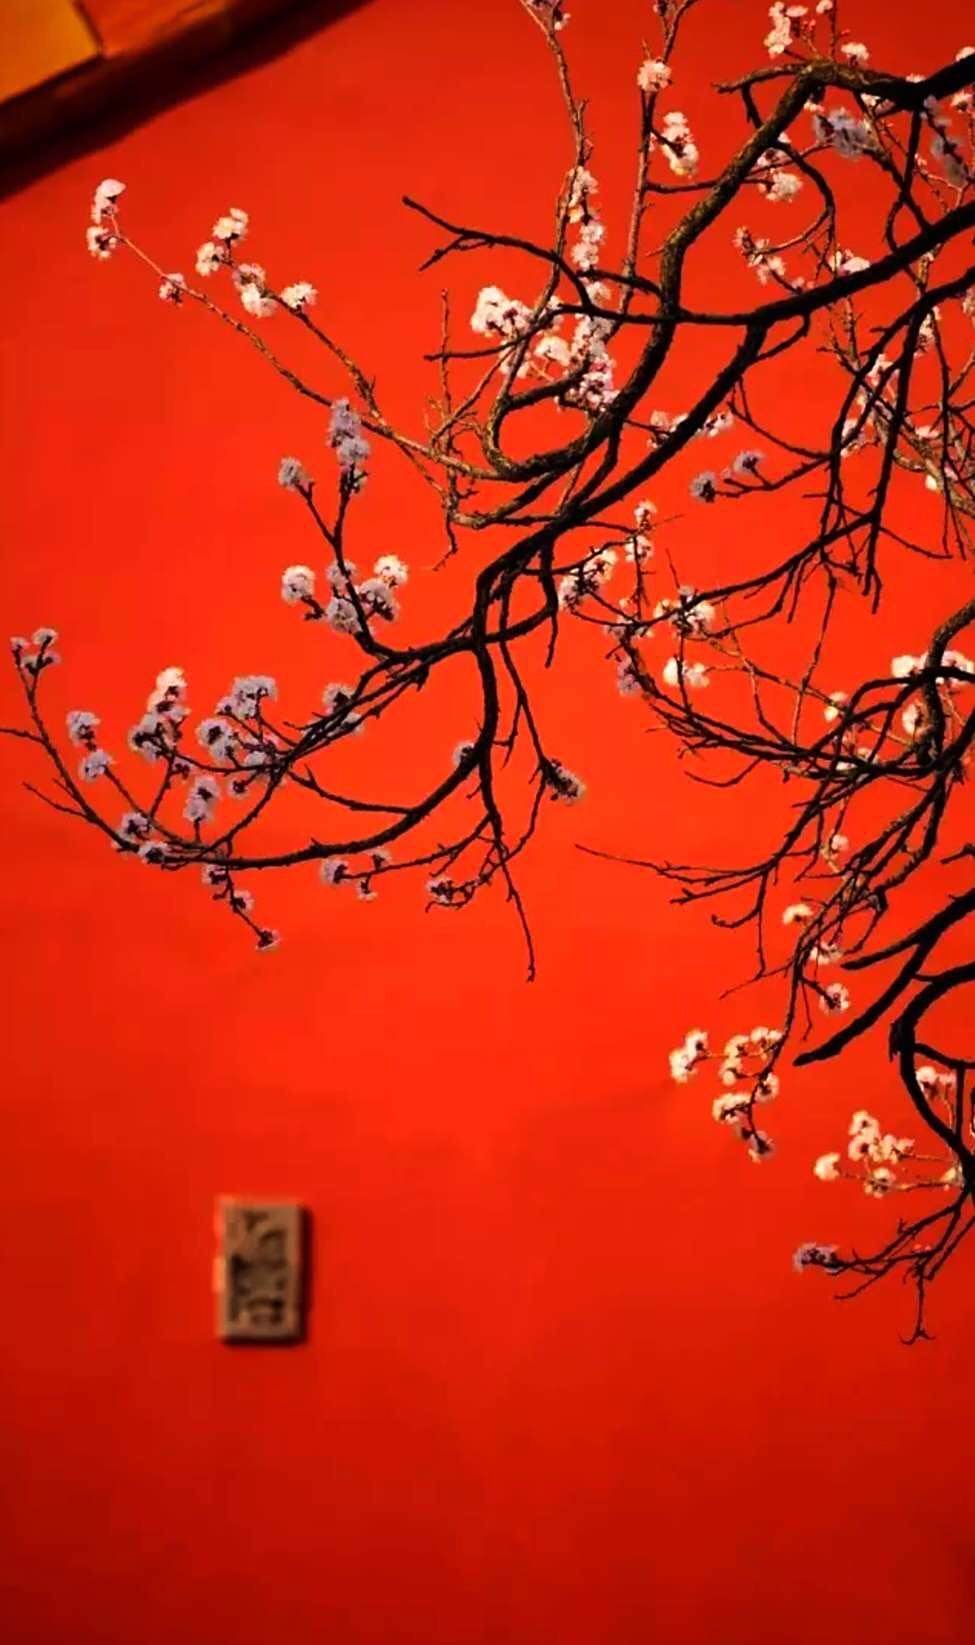 故宫那抹中国红,优美的花,看了心情都不一样